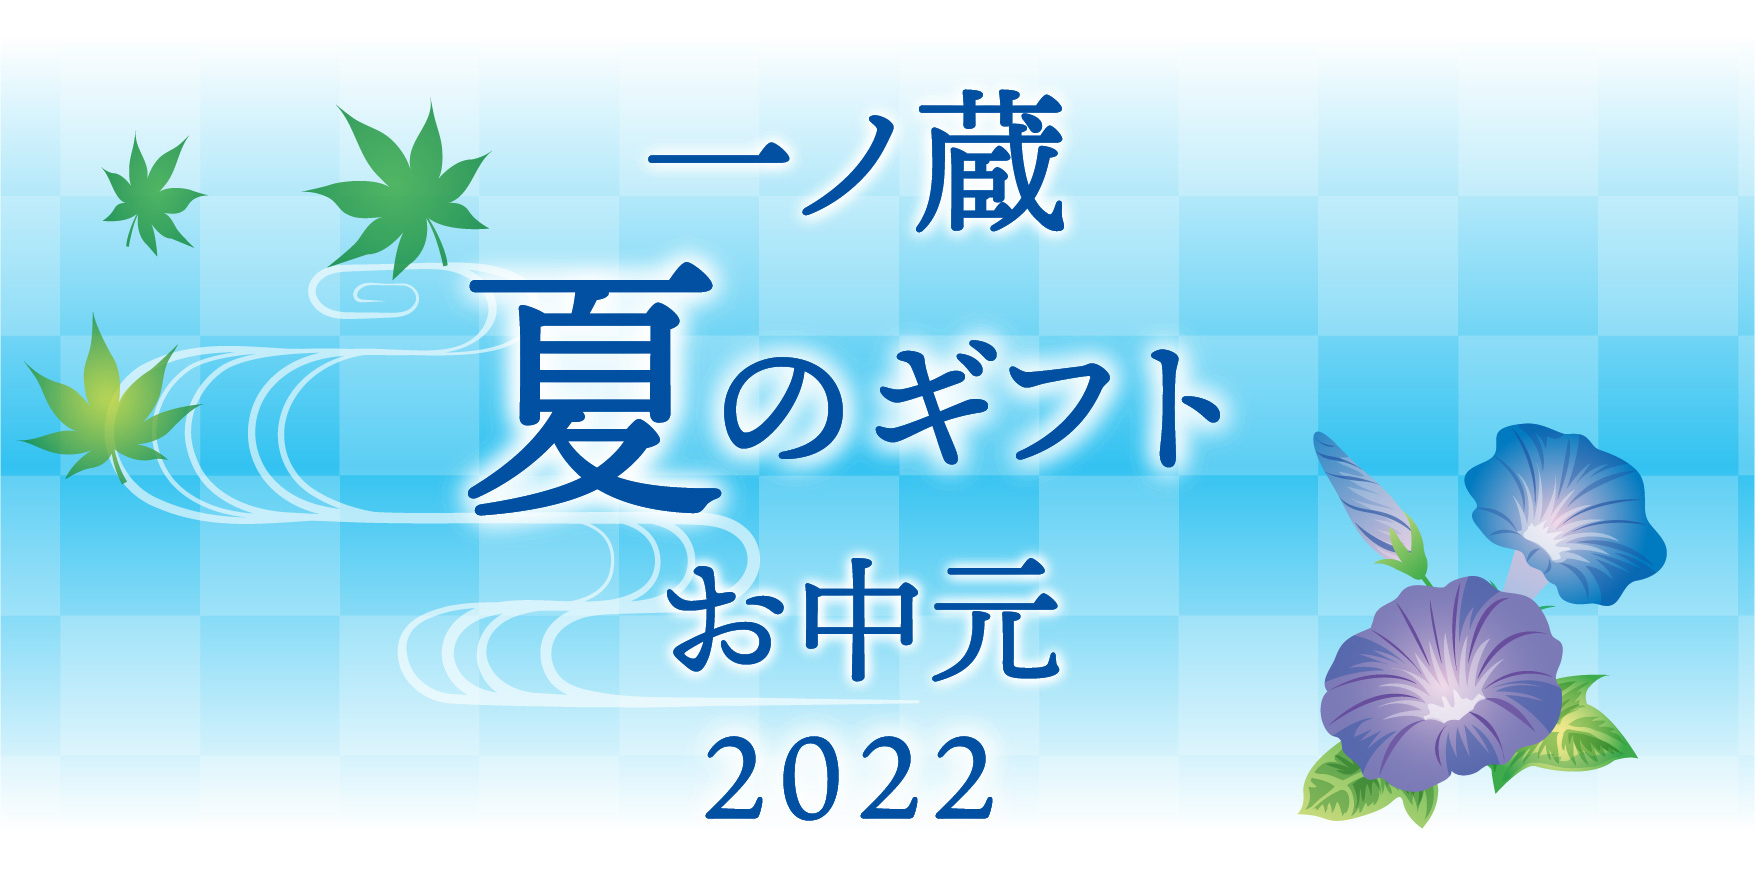 2022おすすめ夏のギフト・お中元特集 | 宮城県の伝統的な手づくりの日本酒蔵一ノ蔵